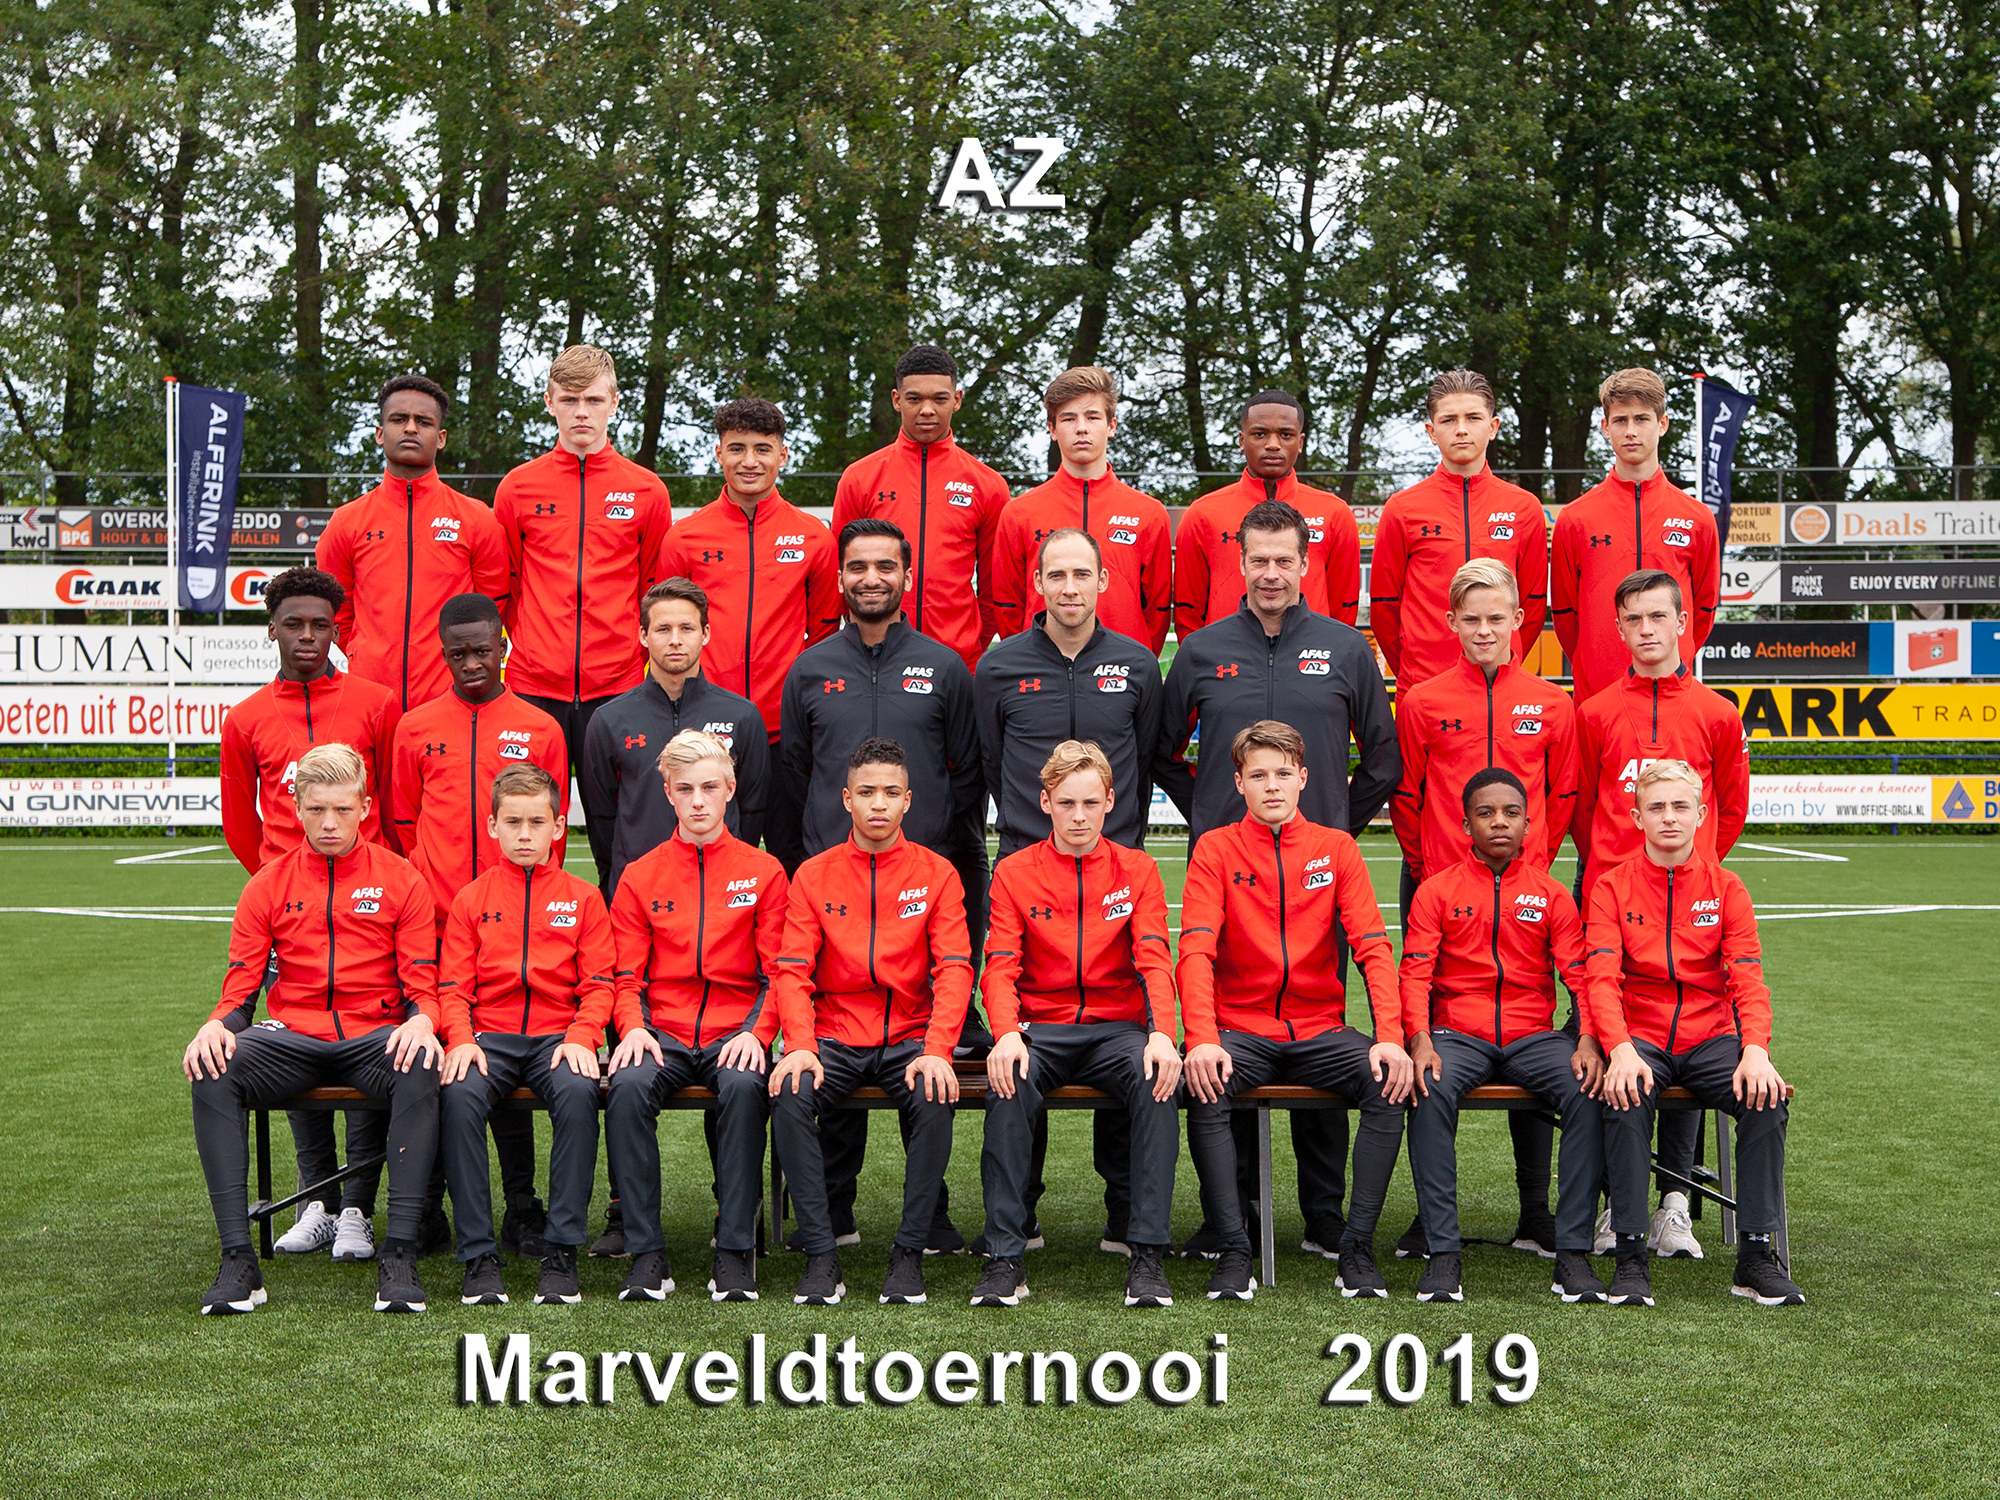 Marveld Tournament 2019 - Team AZ